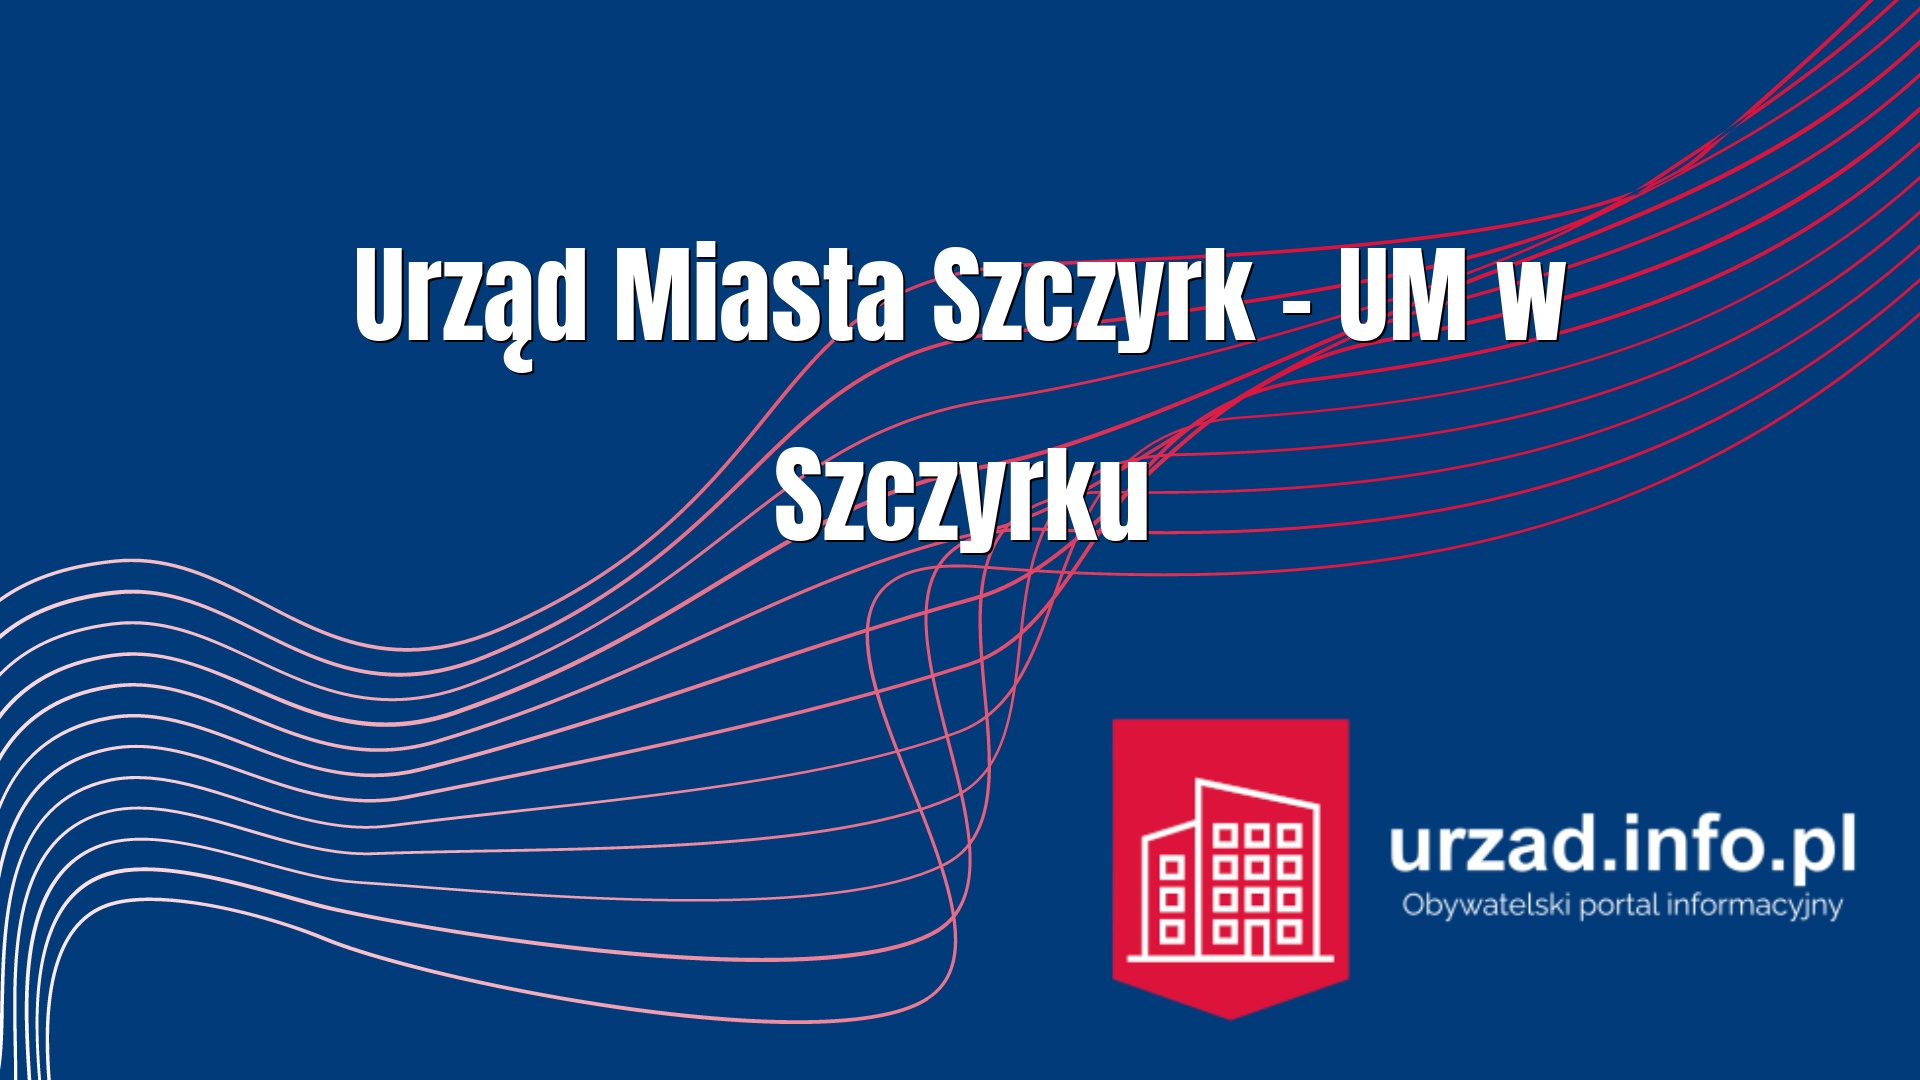 Urząd Miasta Szczyrk – UM w Szczyrku